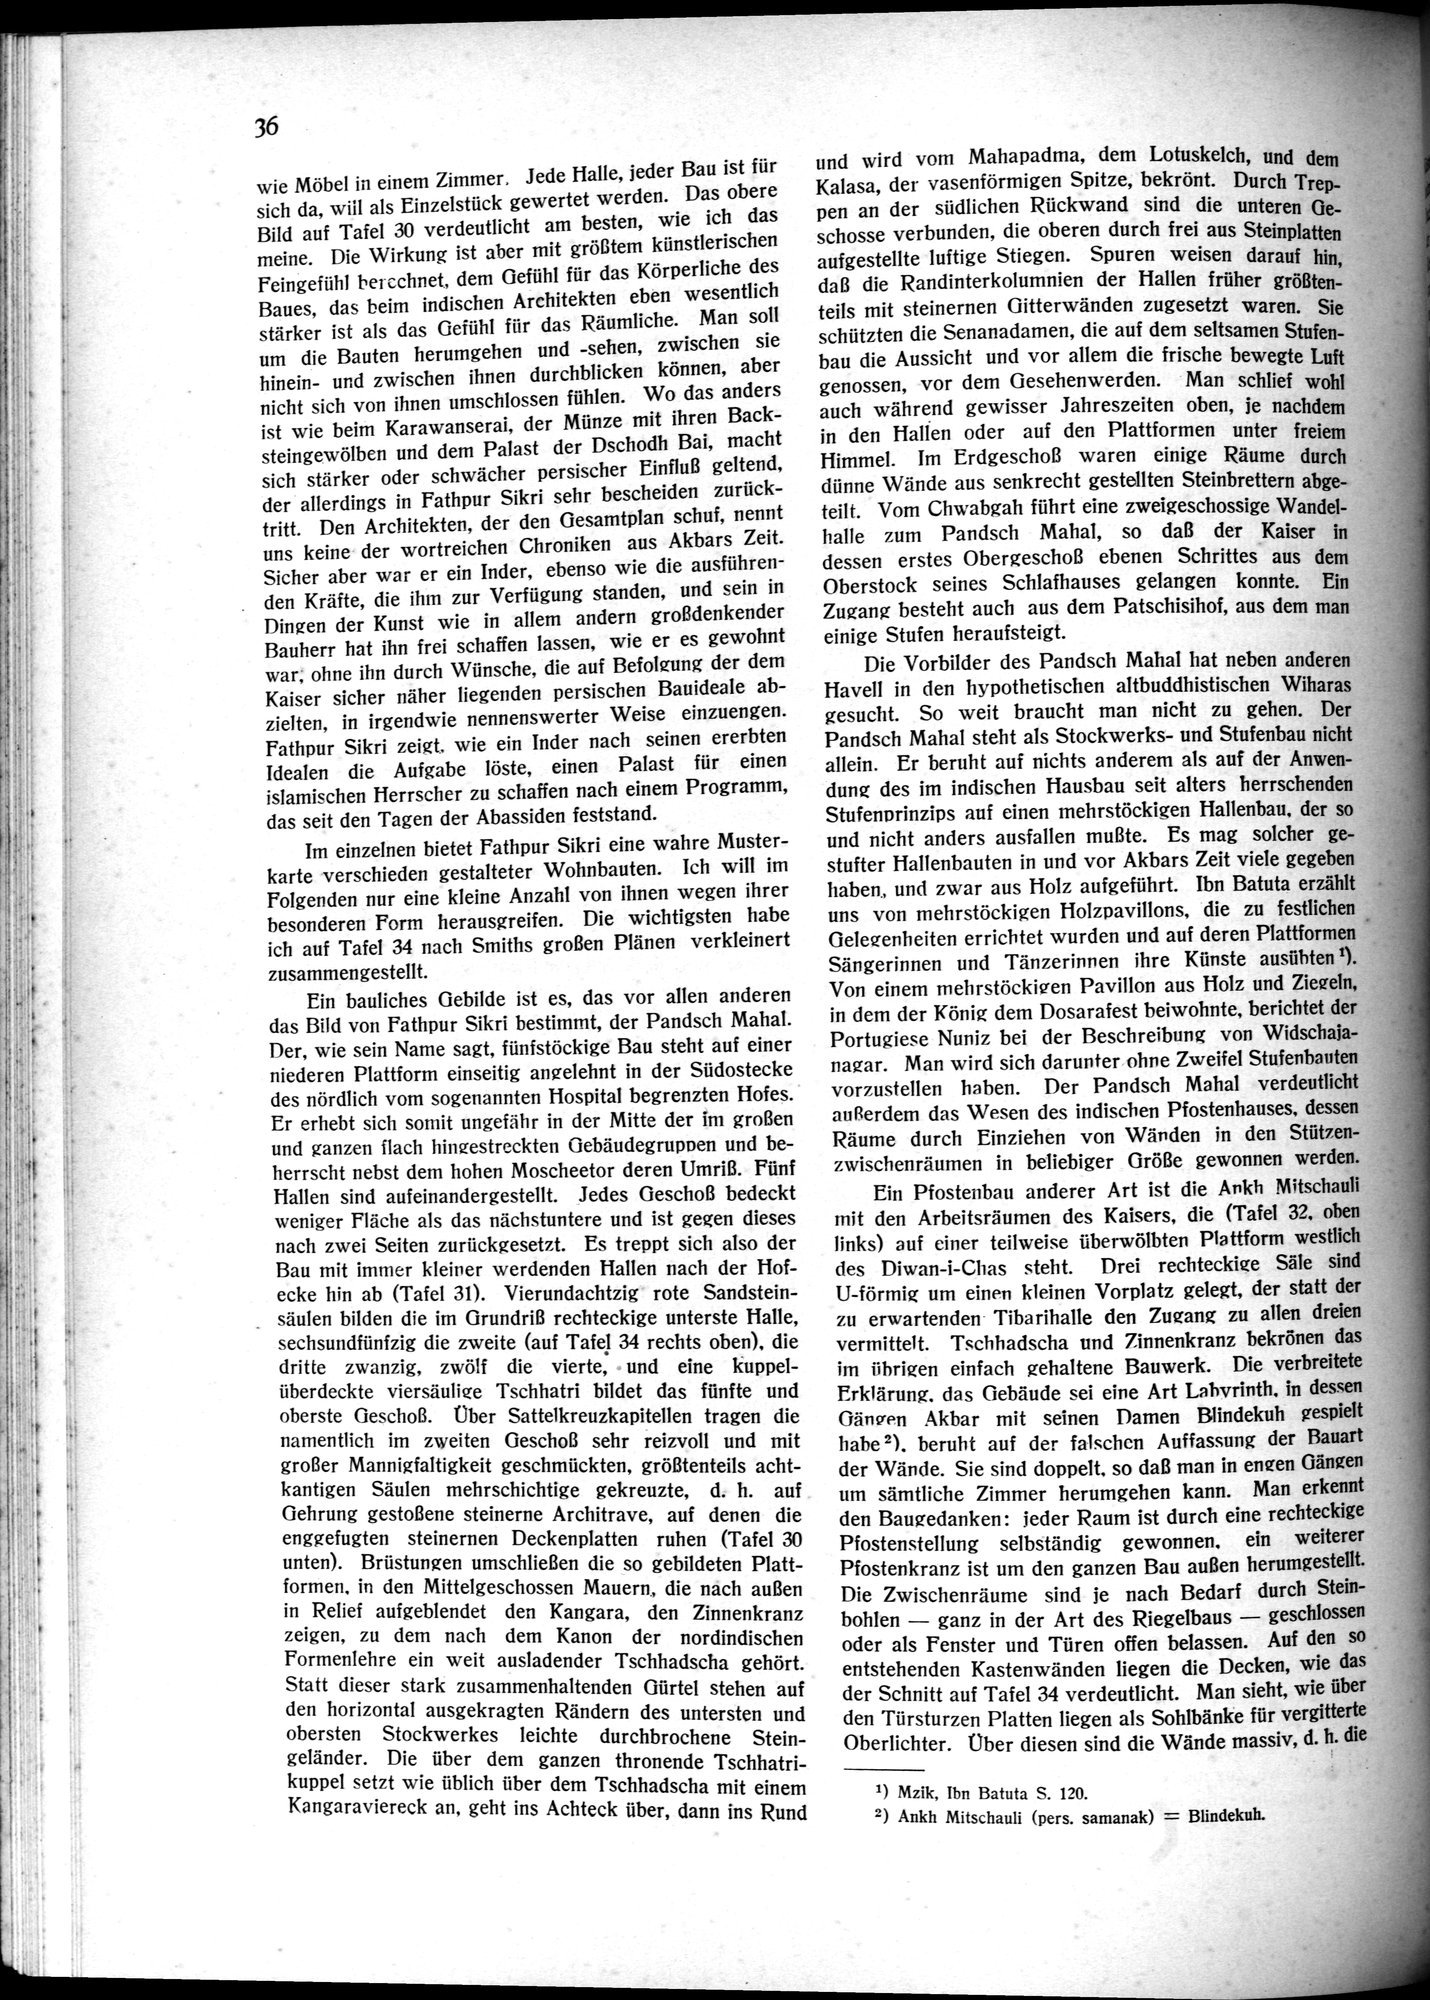 Indische Palaste und Wohnhauser : vol.1 / Page 46 (Grayscale High Resolution Image)